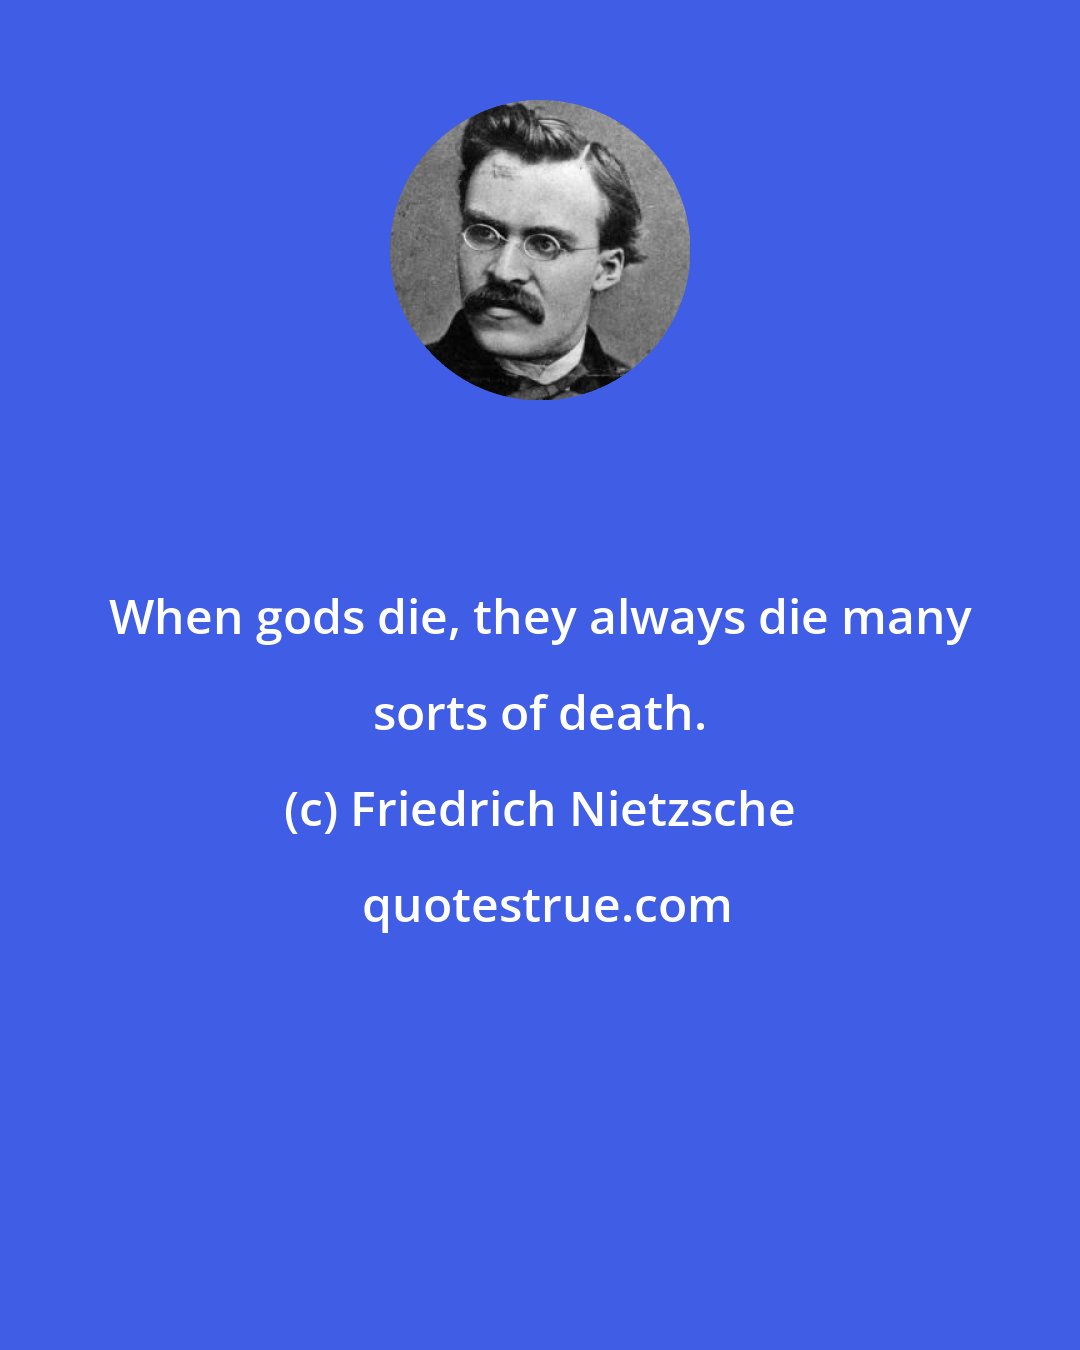 Friedrich Nietzsche: When gods die, they always die many sorts of death.